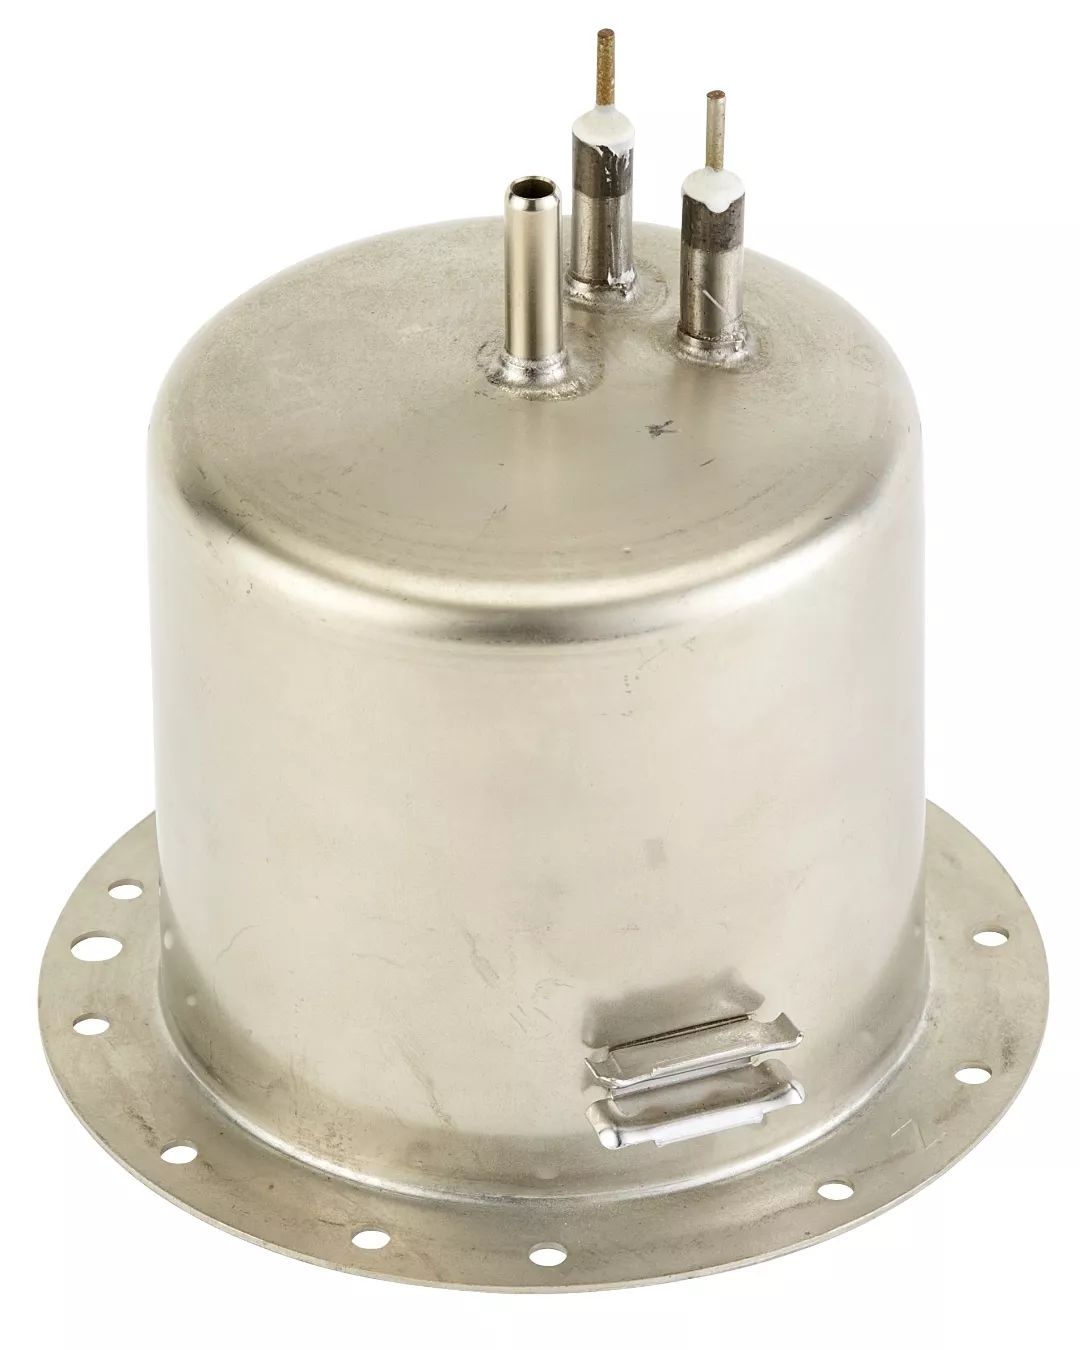 通常 可选用的加热器有液体加热器,铝管加热器,流通式加热器以及铸造